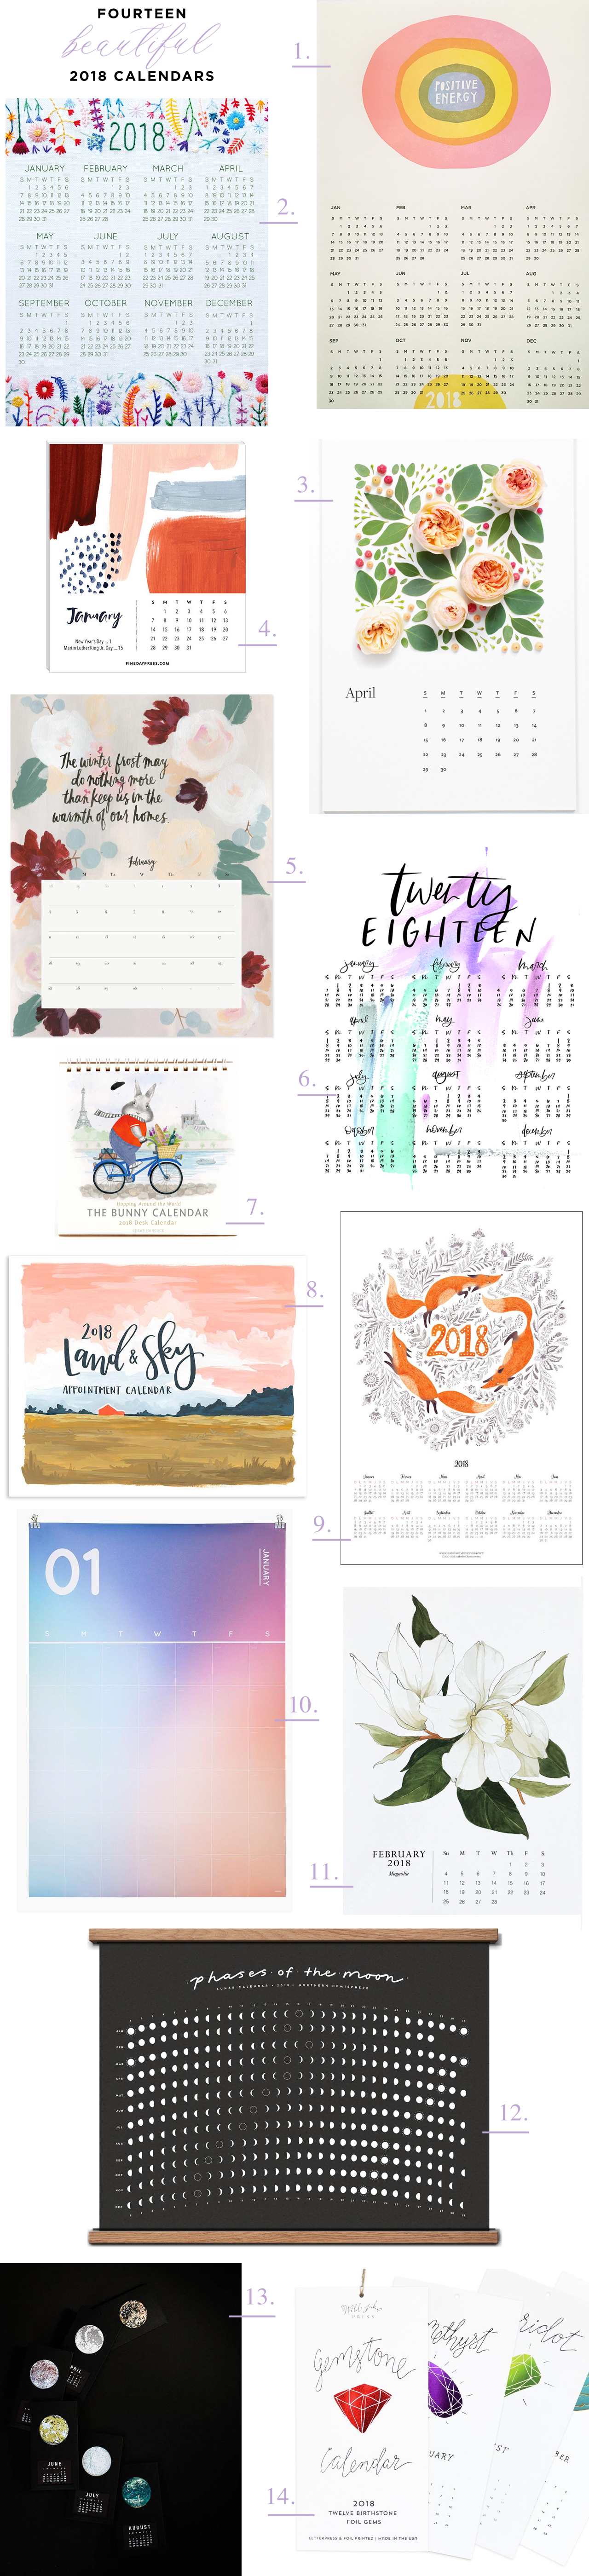 Fourteen Beautiful 2018 Calendars